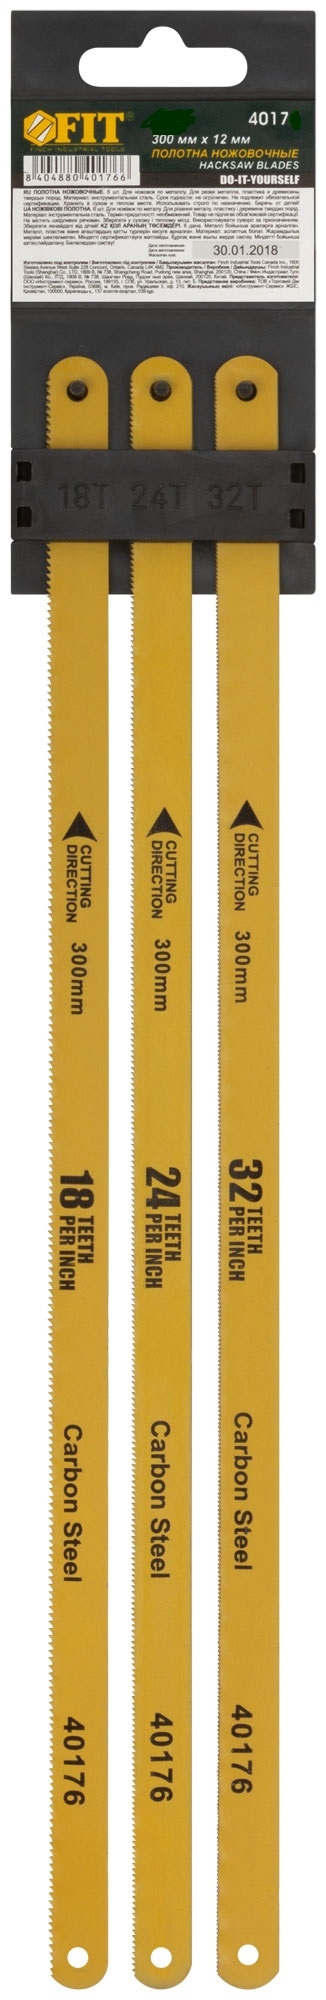 Полотна ножовочные по металлу, 300 мм, (18ТPI+24ТPI+32ТPI/20Cr ), 3 шт. FIT 40175 сибртех полотна для ножовки по металлу 300 мм шаг 1 мм 2 шт сибртех